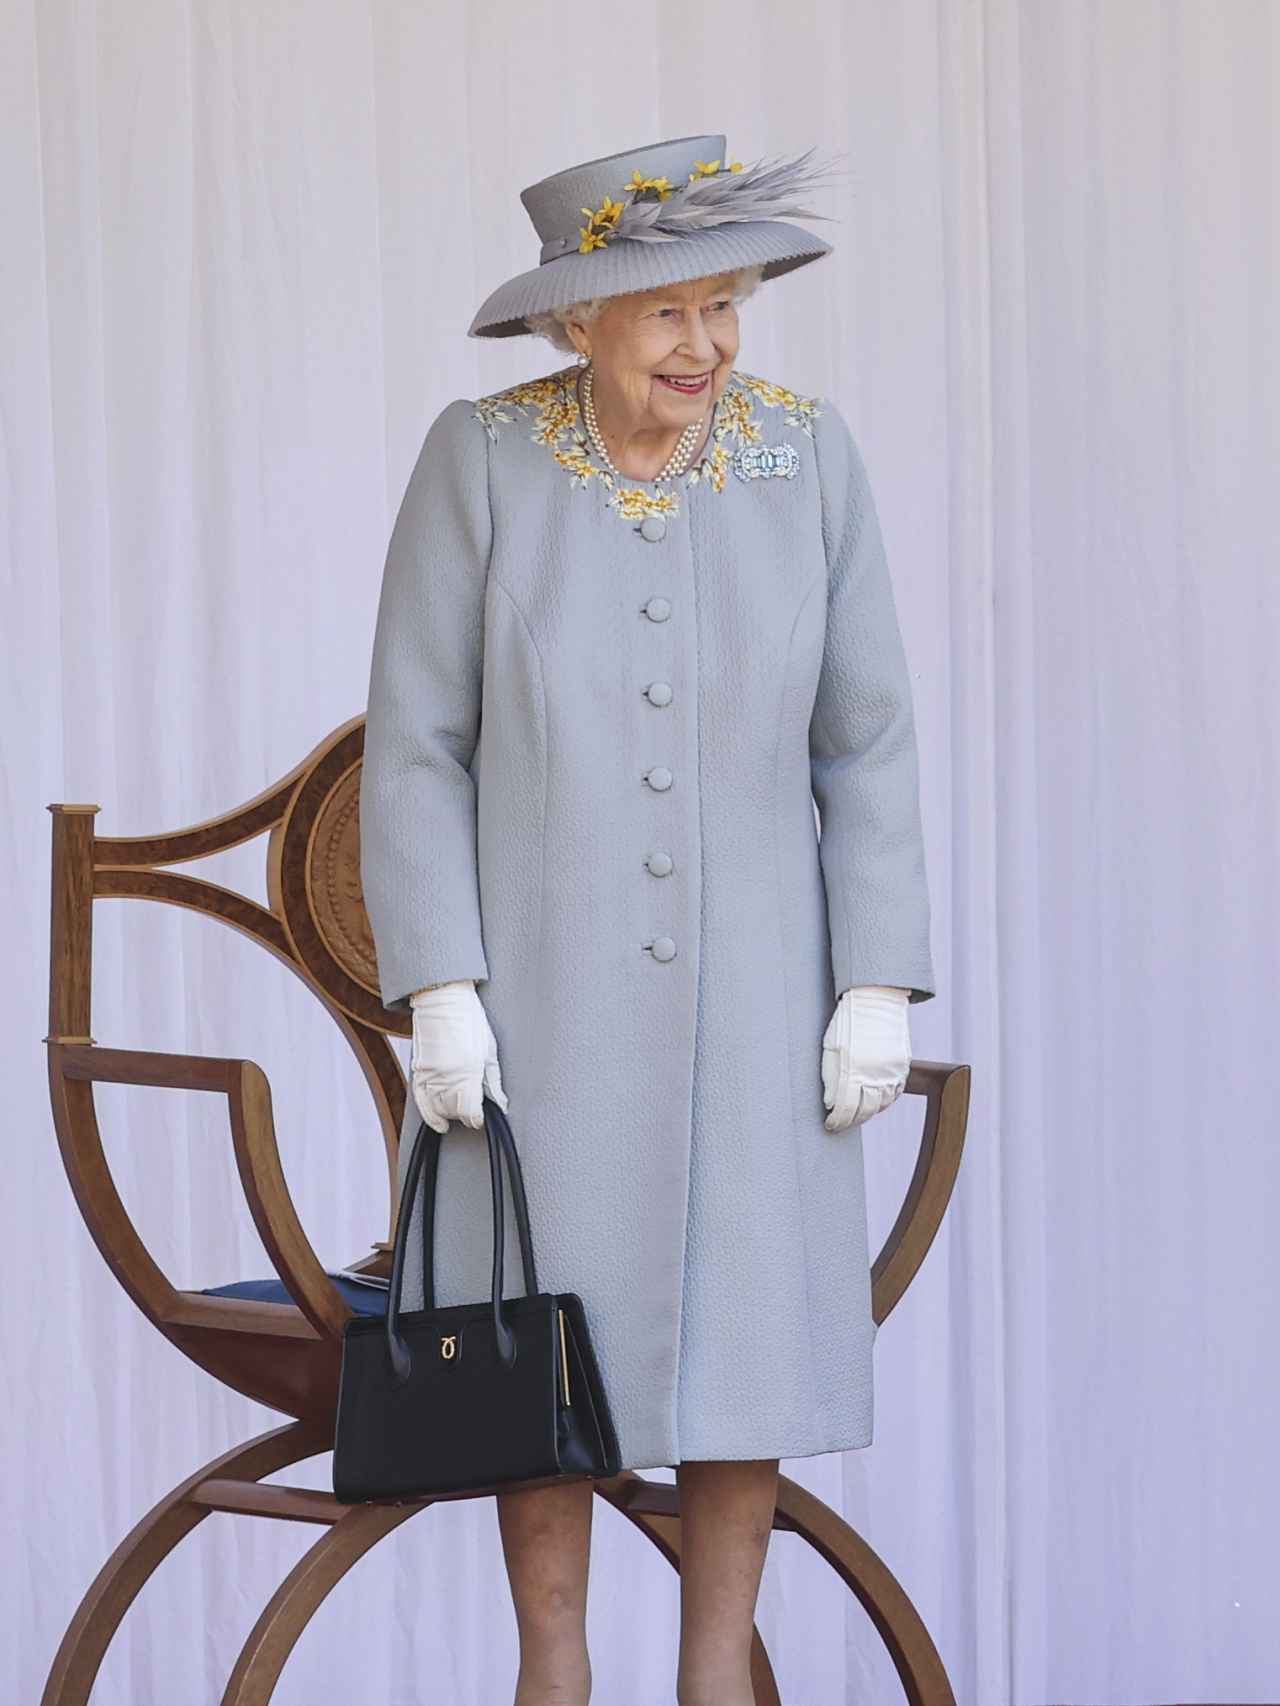 Pese a ser una celebración triste, la Reina se ha mostrado sonriente en algún momento.